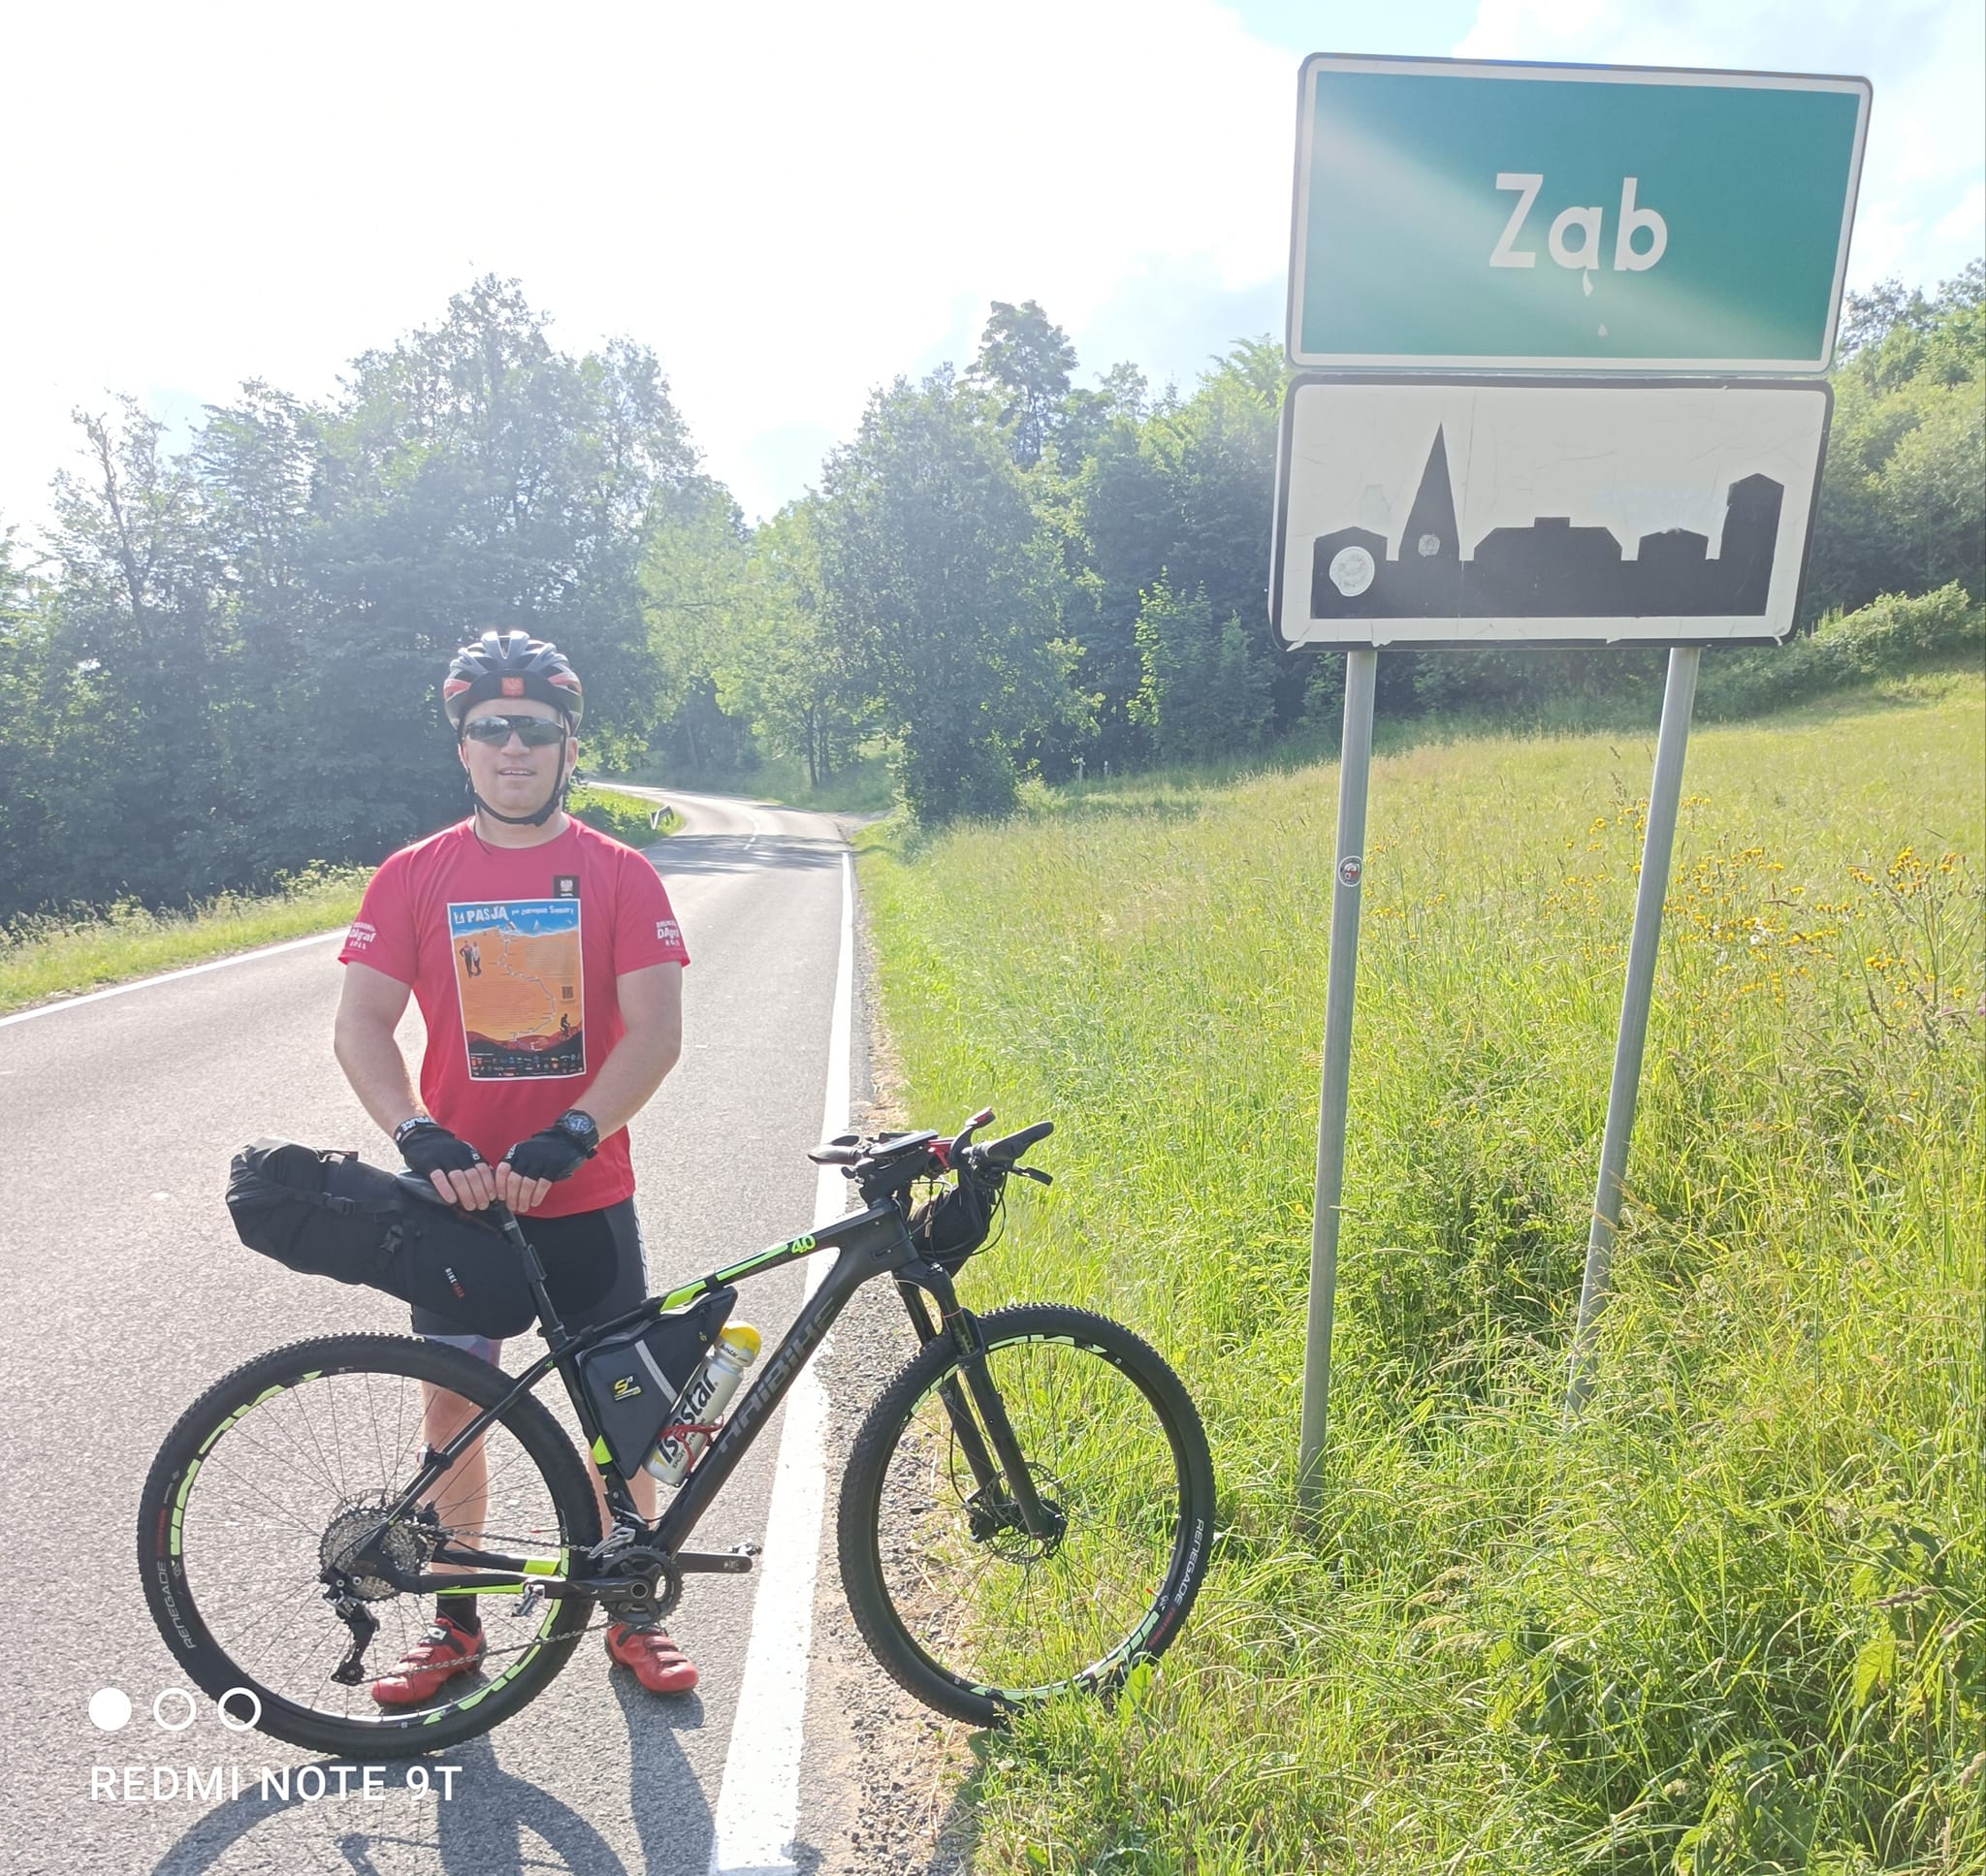 Kamil Jaroszewski stoi z rowerem na tle znaku miejscowości Ząb.